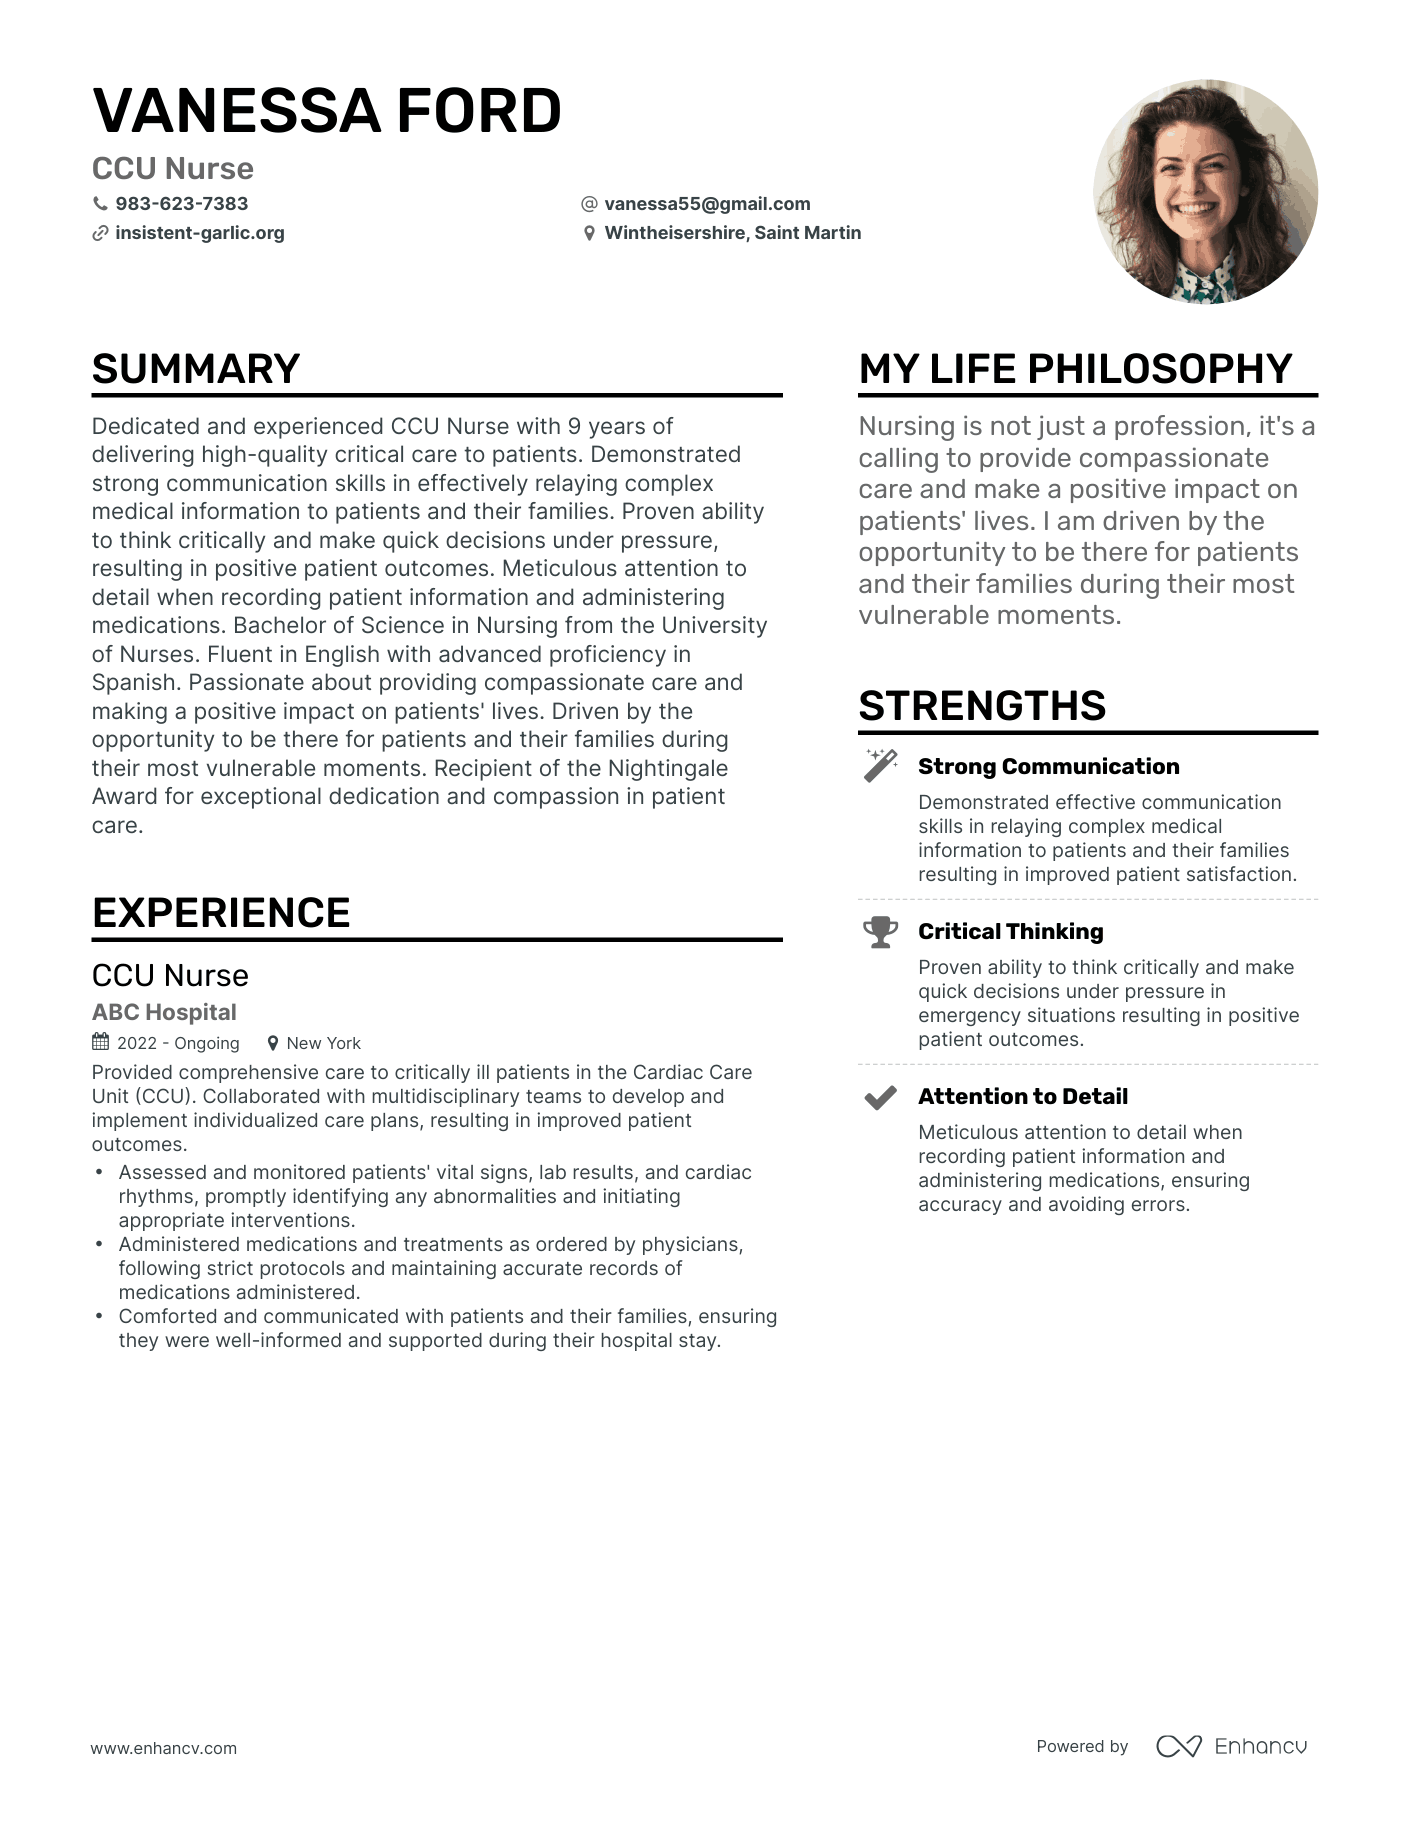 CCU Nurse resume example